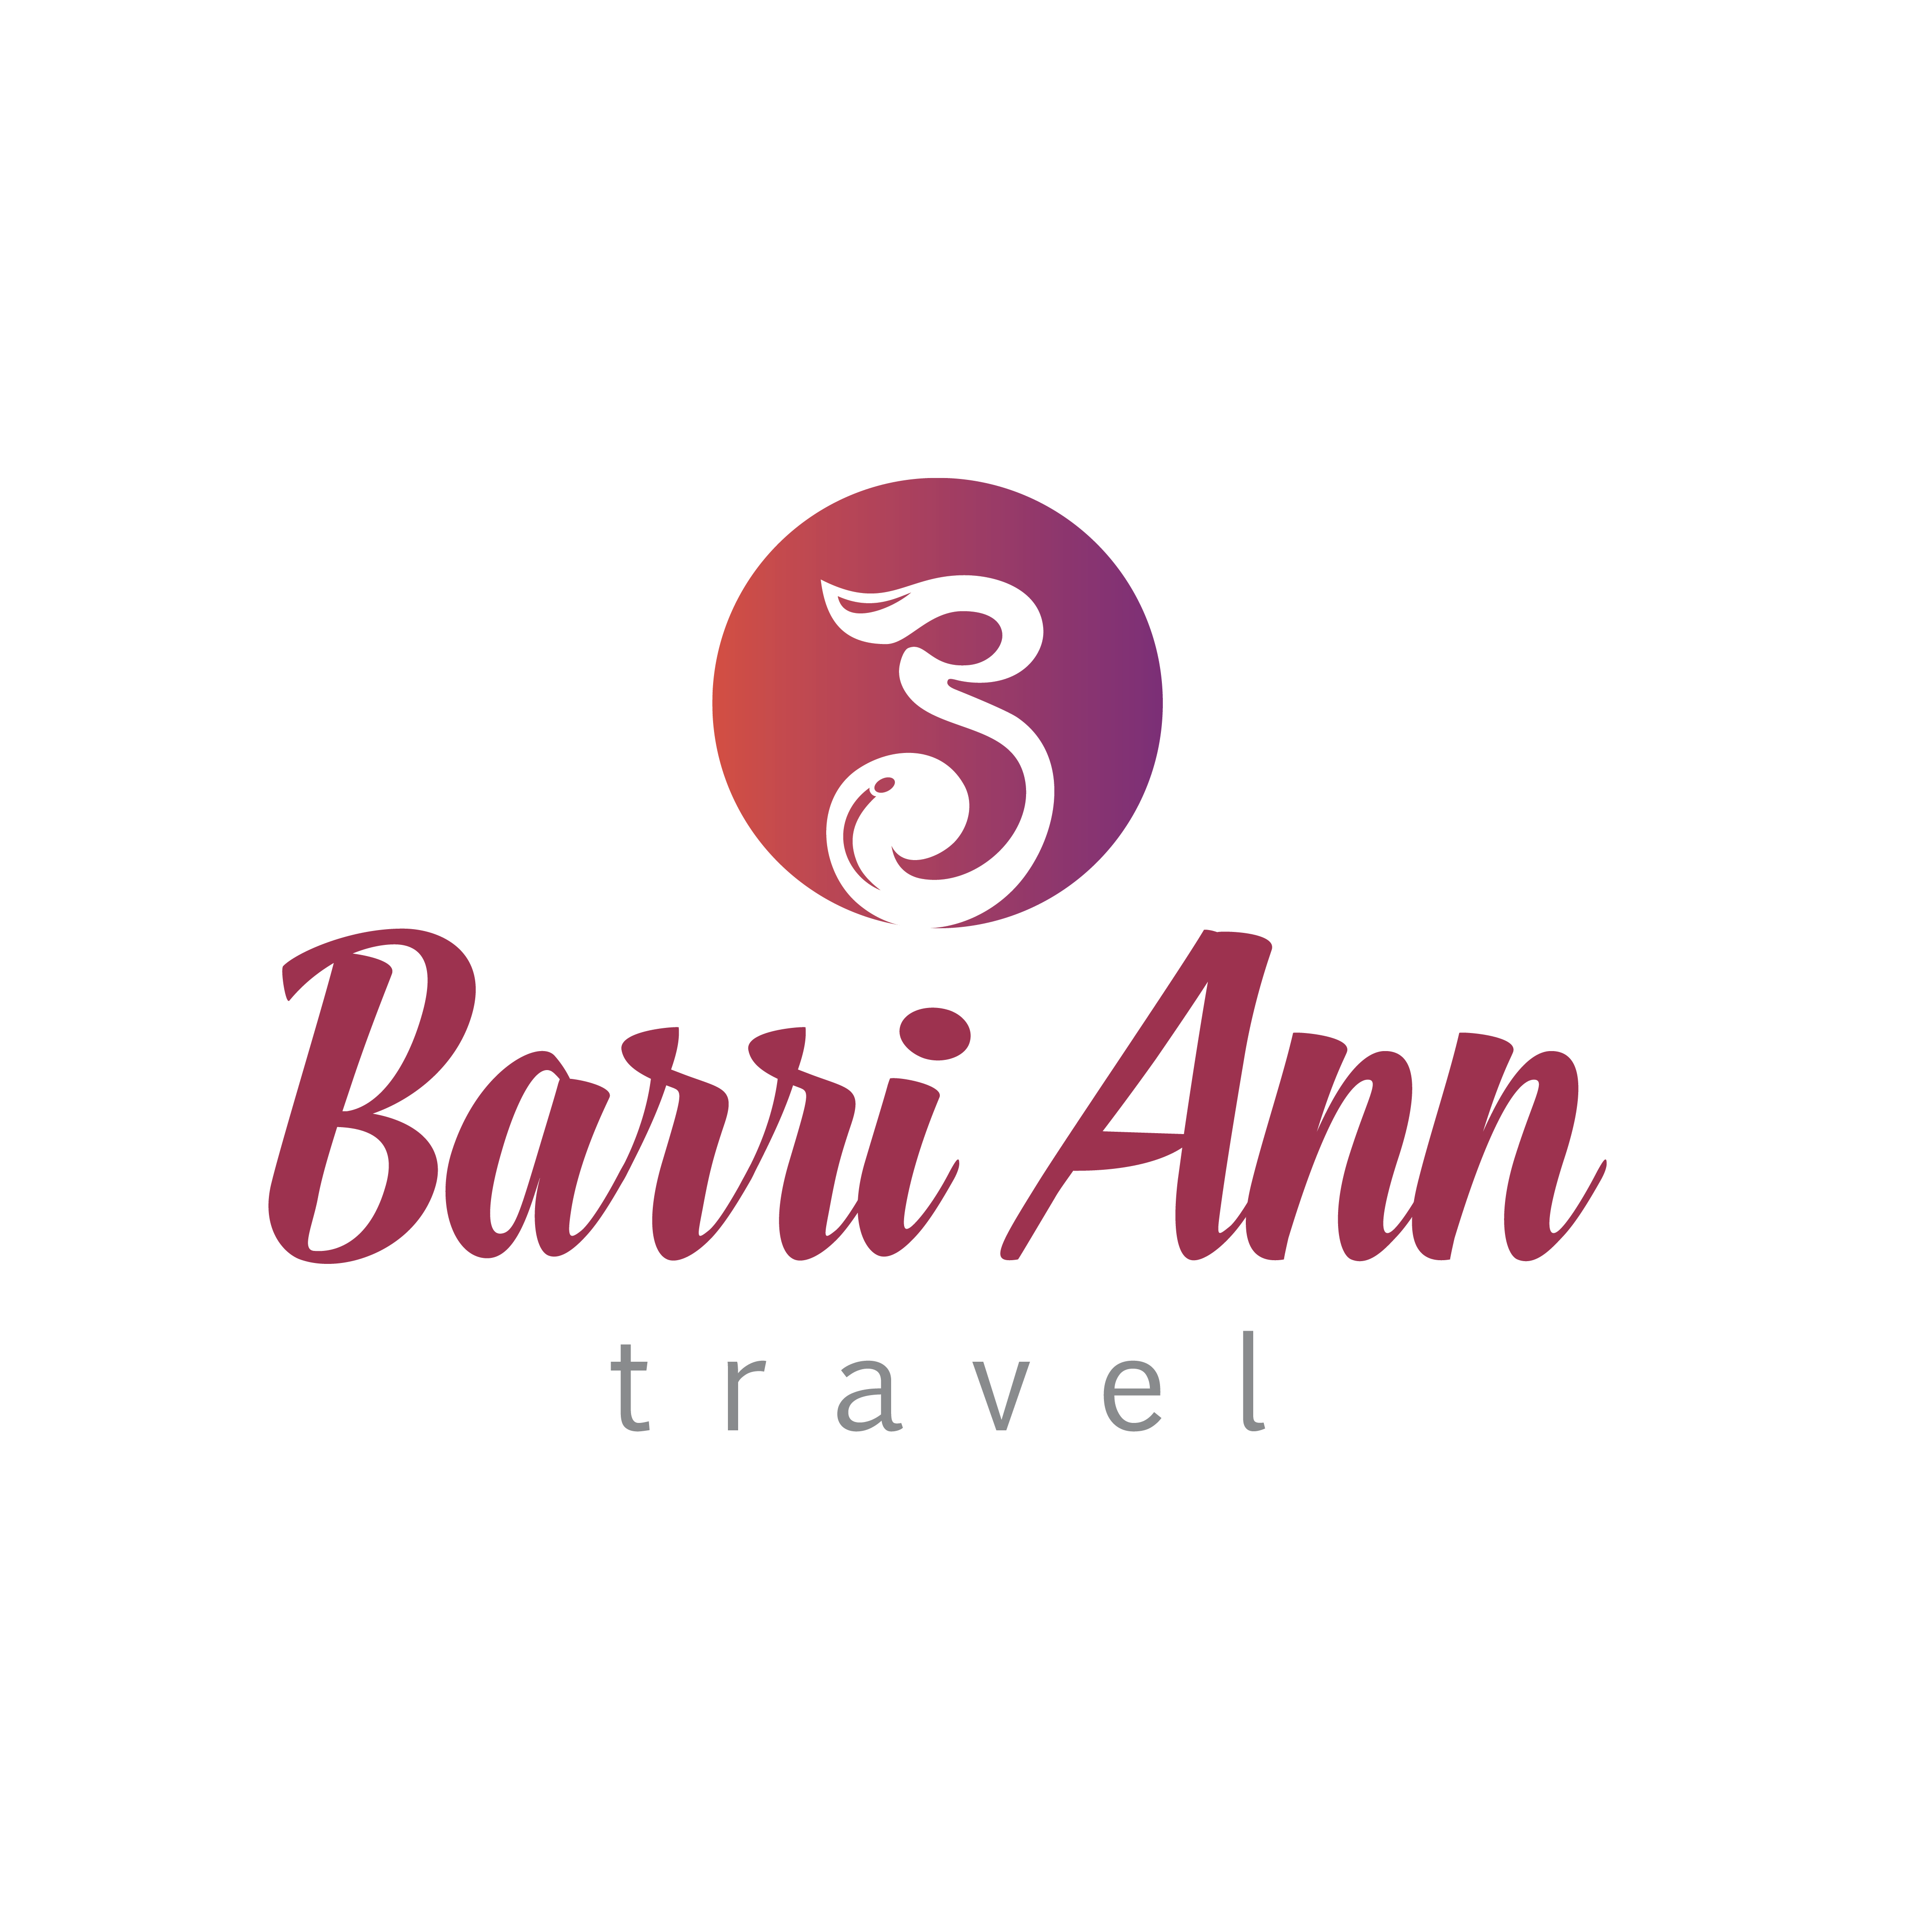 Barri Ann Travel - Vietnam | GetYourGuide Supplier